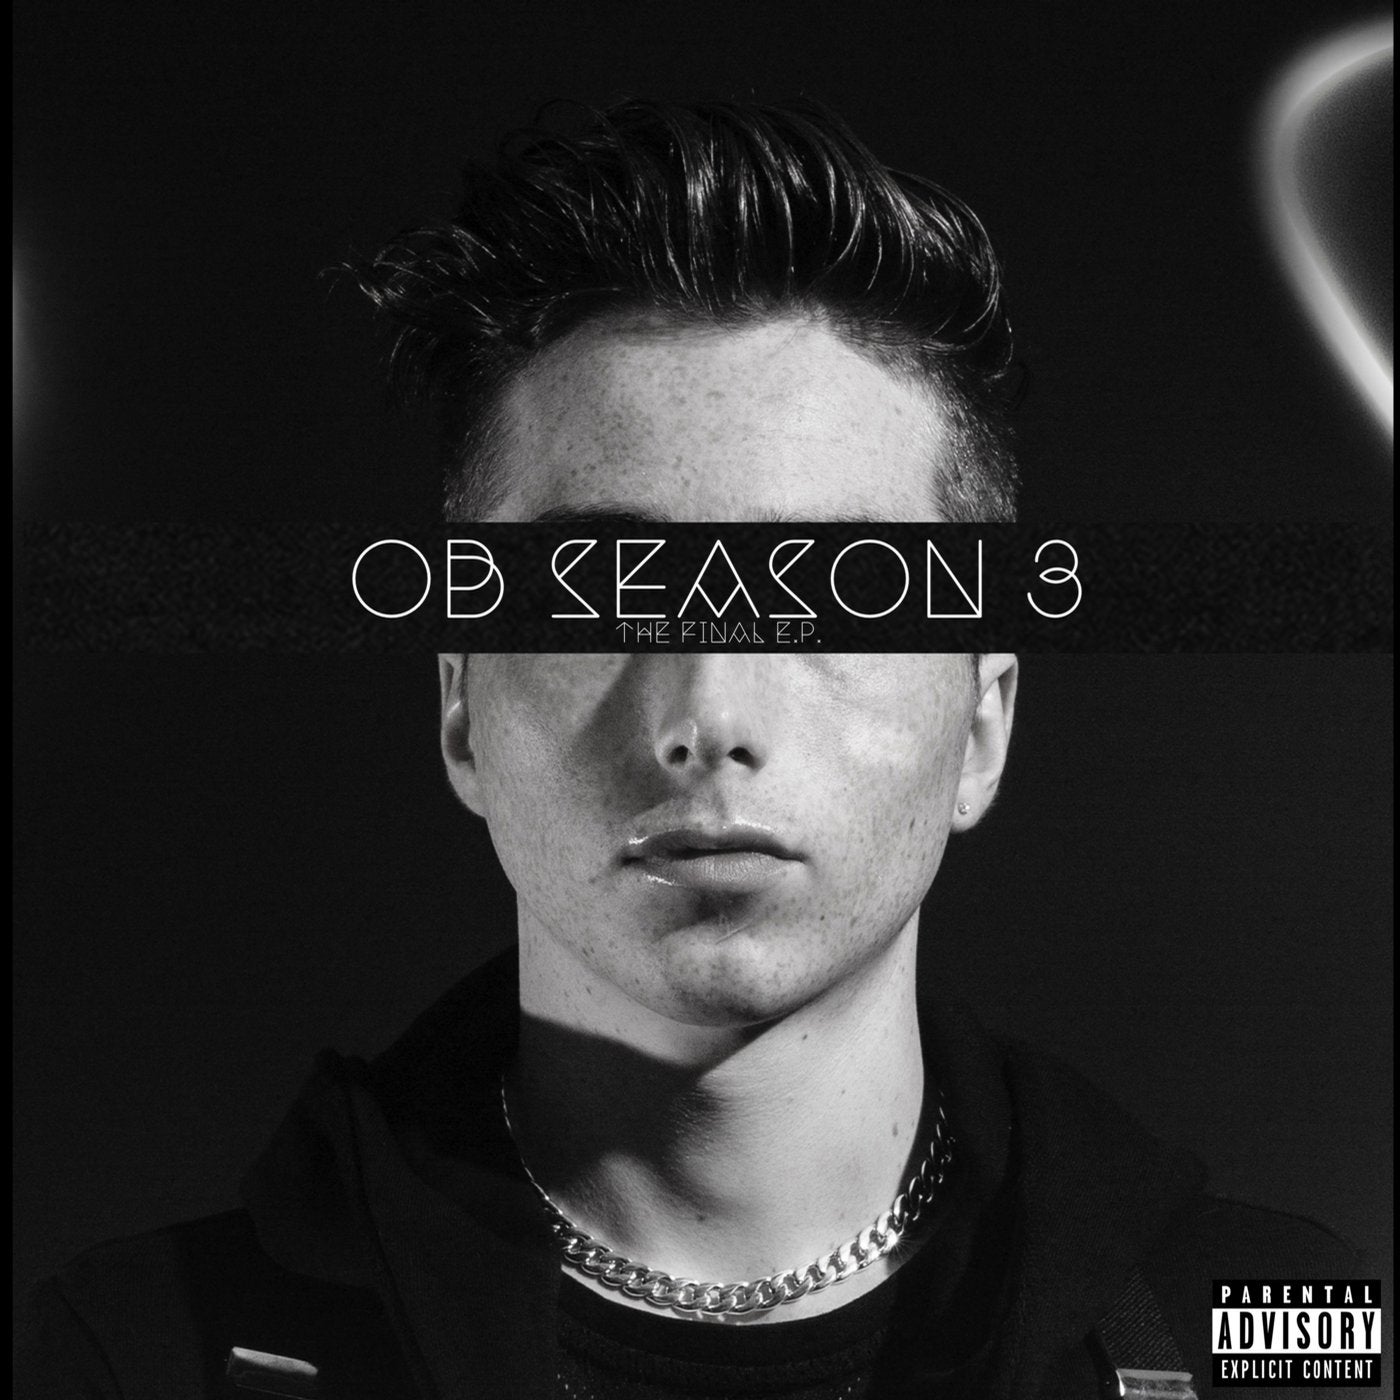 OB Season 3